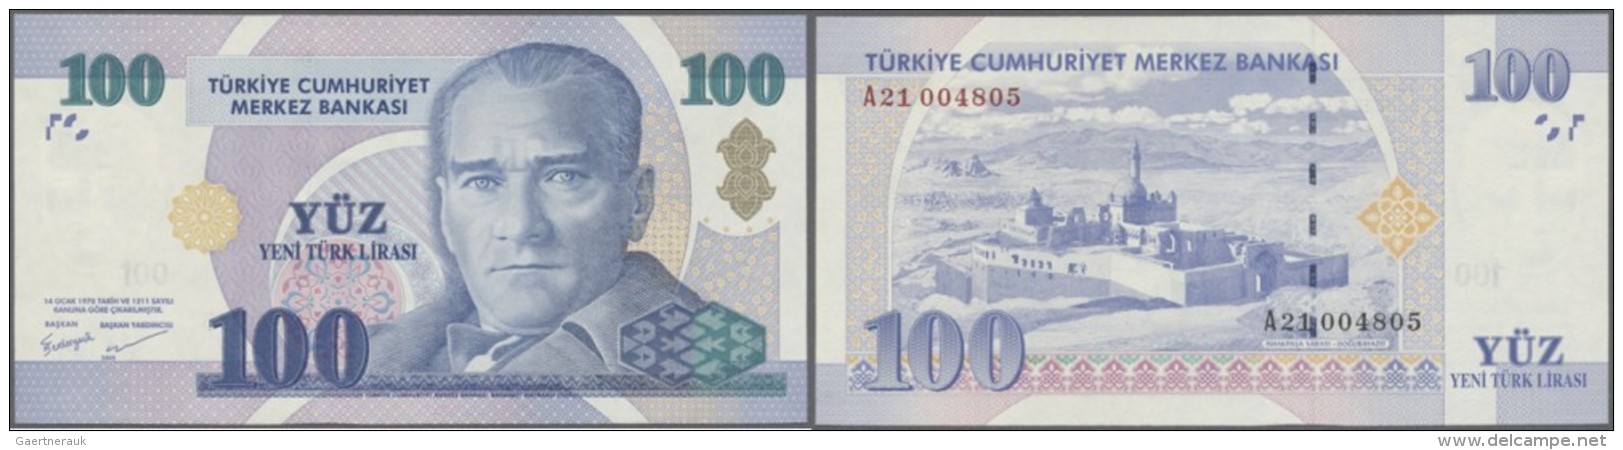 Turkey / T&uuml;rkei: 100 Lira 2005 P. 221, In Condition: UNC. - Türkei